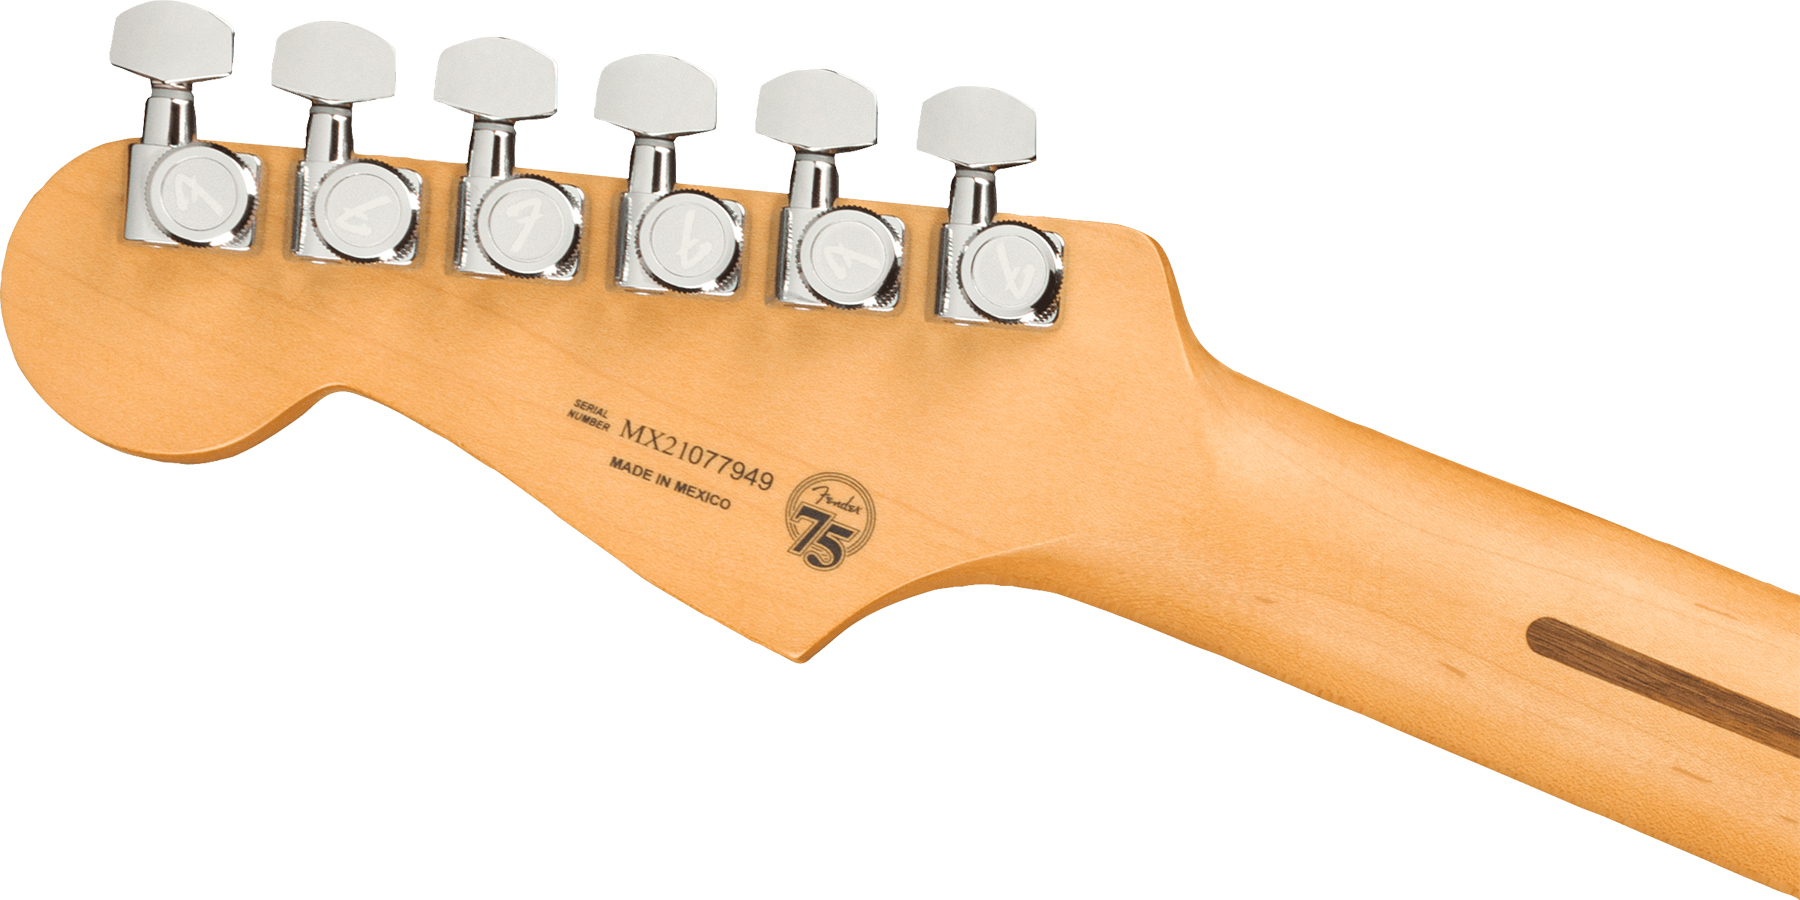 Fender Strat Player Plus Mex 3s Trem Mn - 3-color Sunburst - Guitare Électrique Forme Str - Variation 3